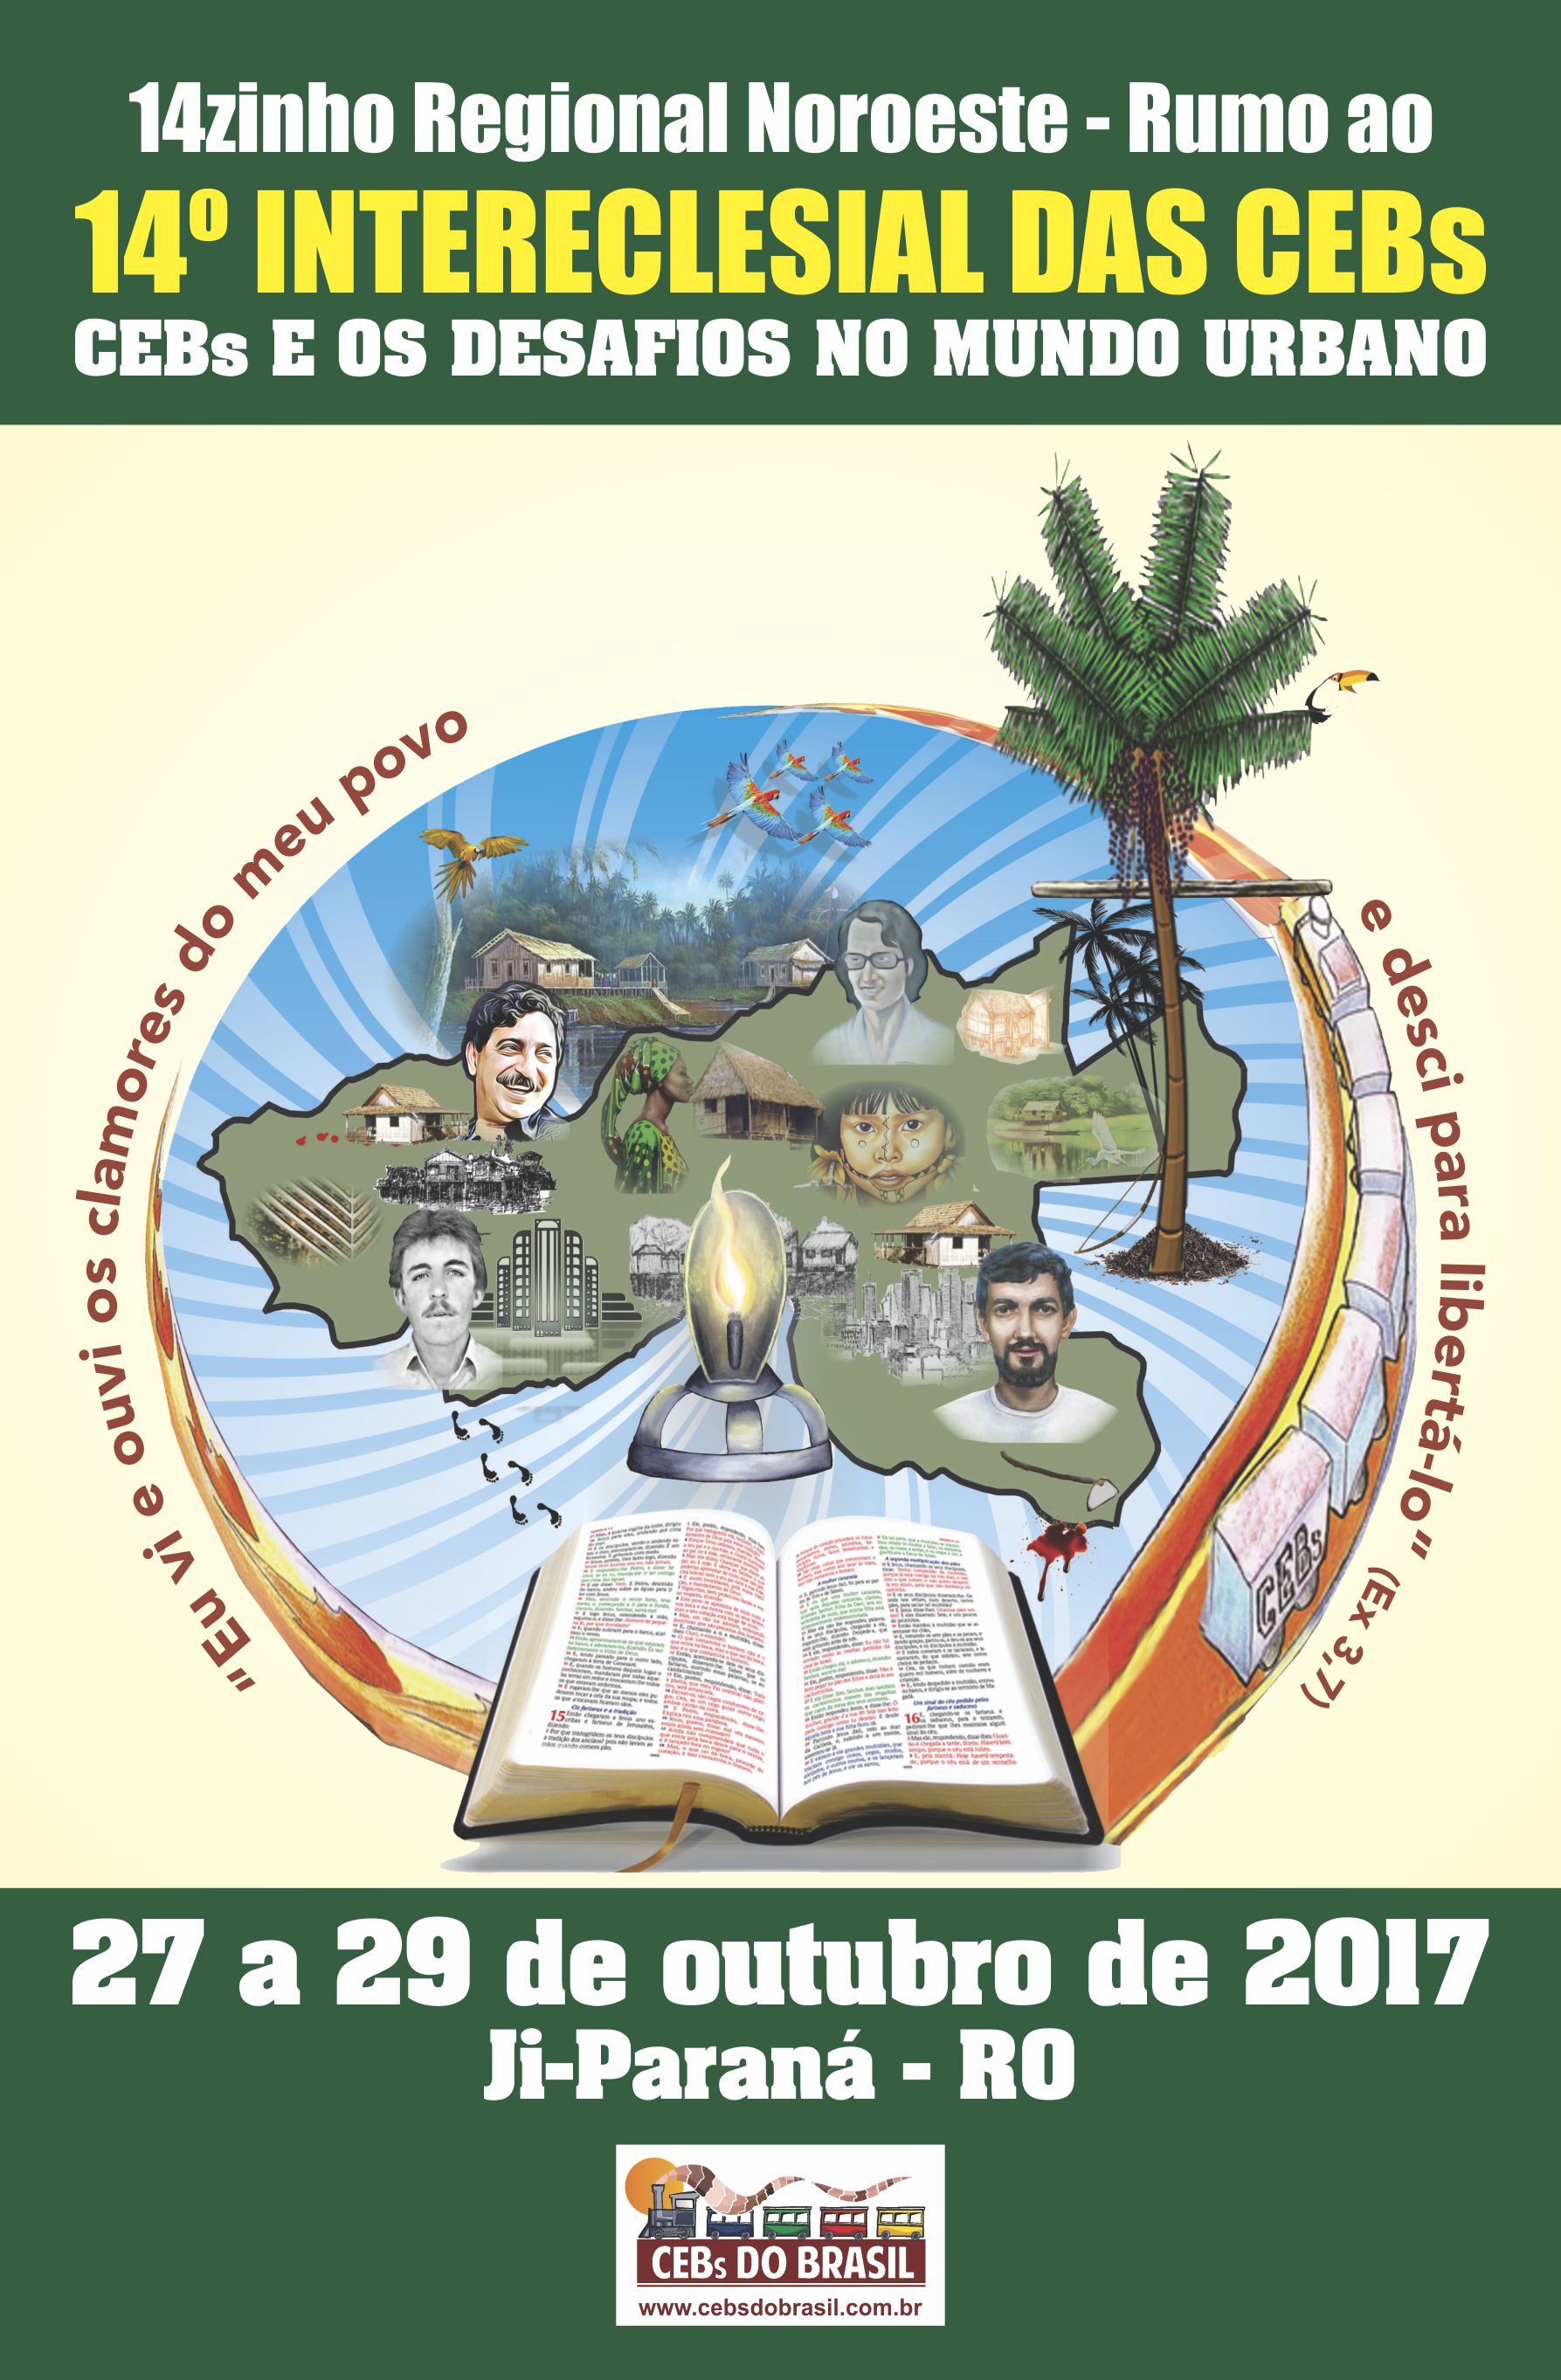 CEBs: 14zinho Regional Noroeste será realizado na cidade de Ji-Paraná-RO